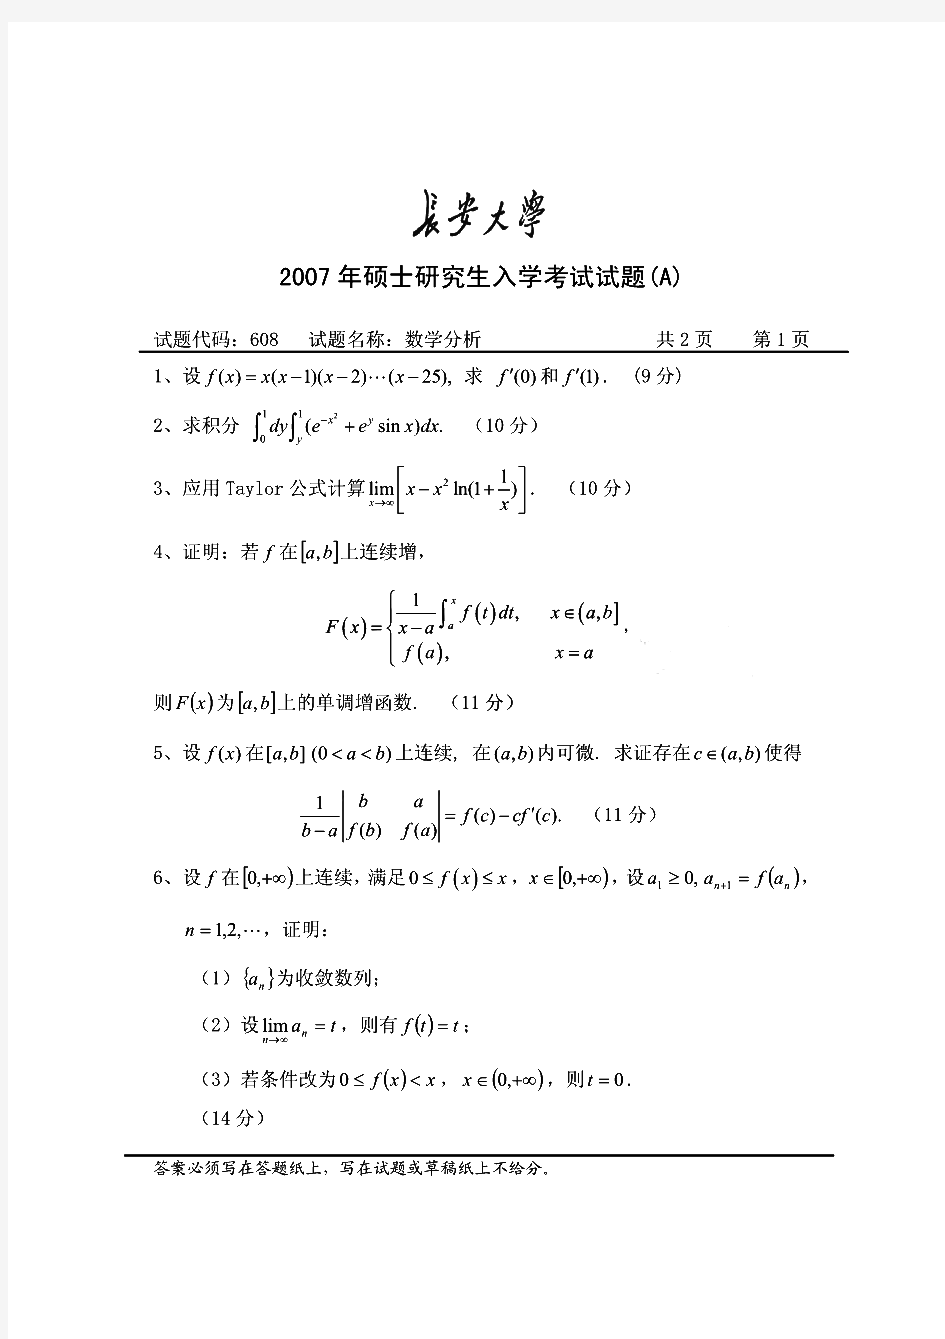 长安大学数学分析(数学分析)历年考研试题